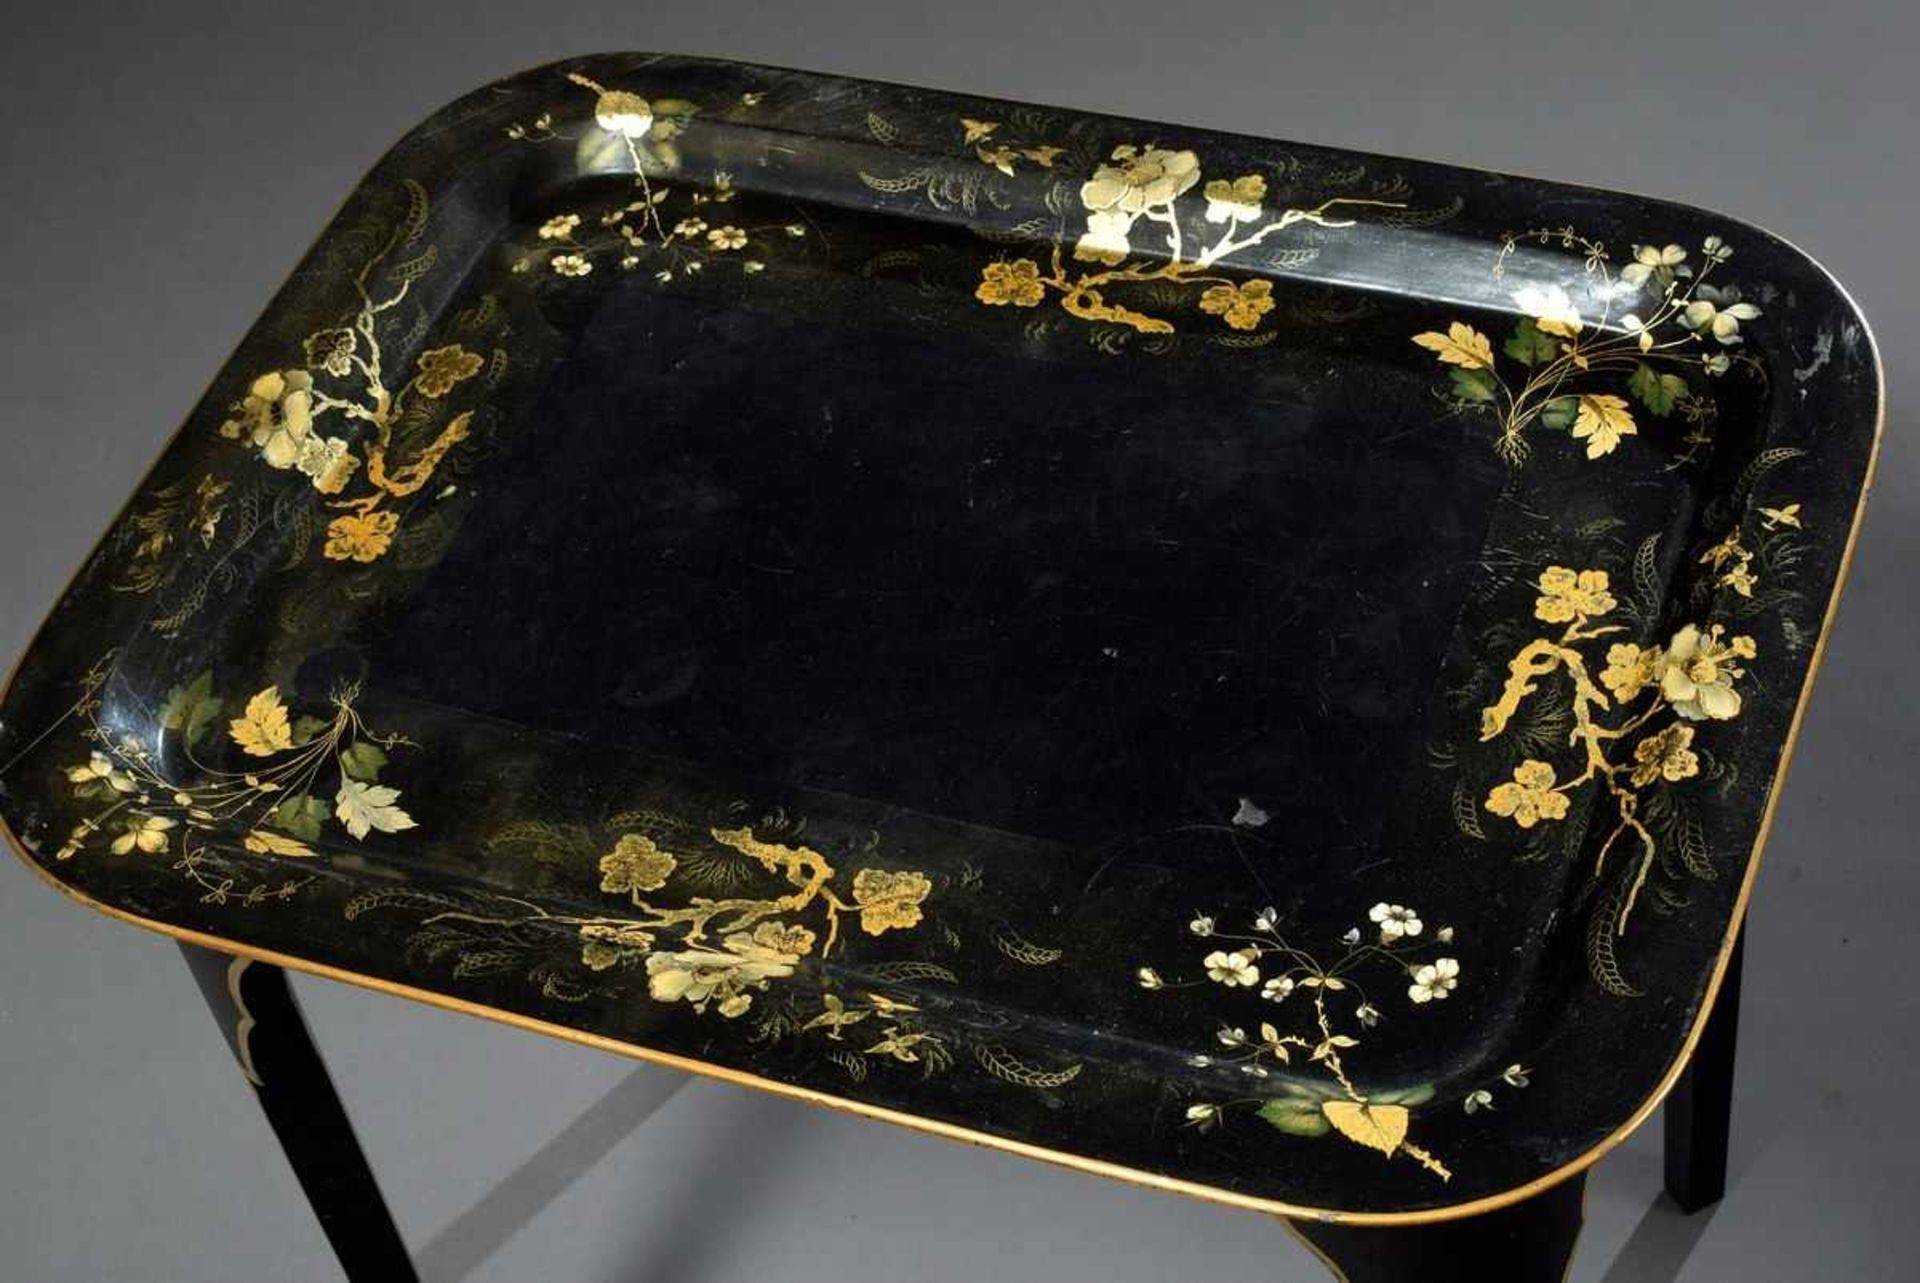 Kleiner schwarzer Lack Tablett-Tisch mit goldenem Floraldekor, 56,5x62x46cm, Gestell ergänztSmall - Bild 3 aus 4